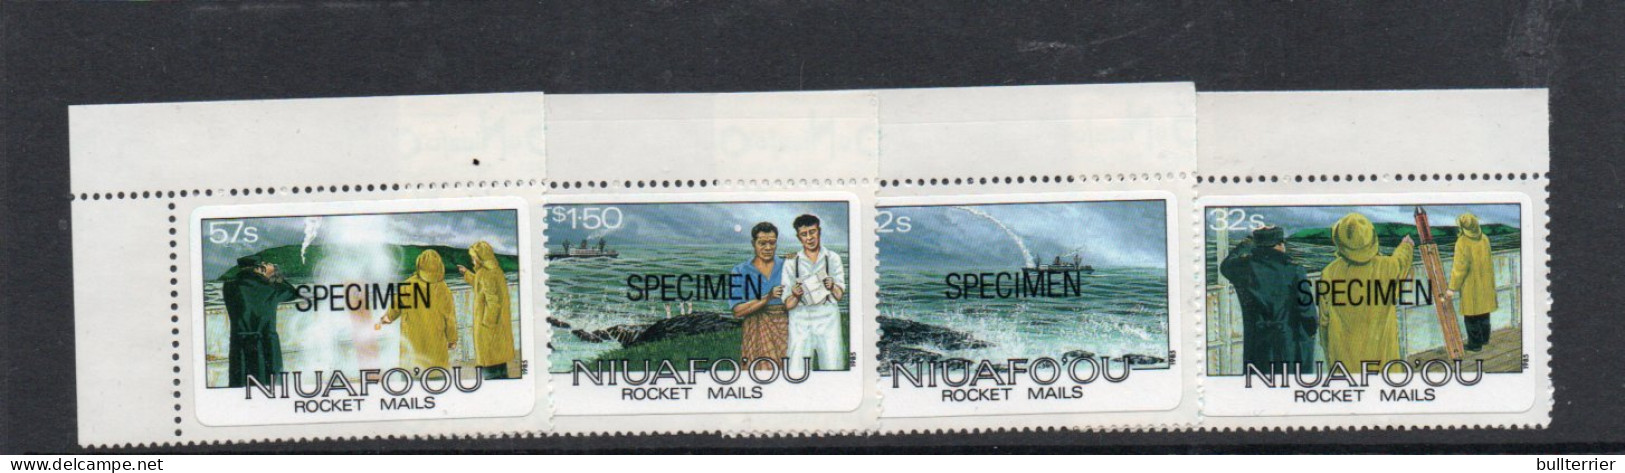 NIUAFOOU - 1985 - ROCKET MAILS SET OF 4   " SPECIMENS"  MINT NEVER HINGED  - Otros - Oceanía